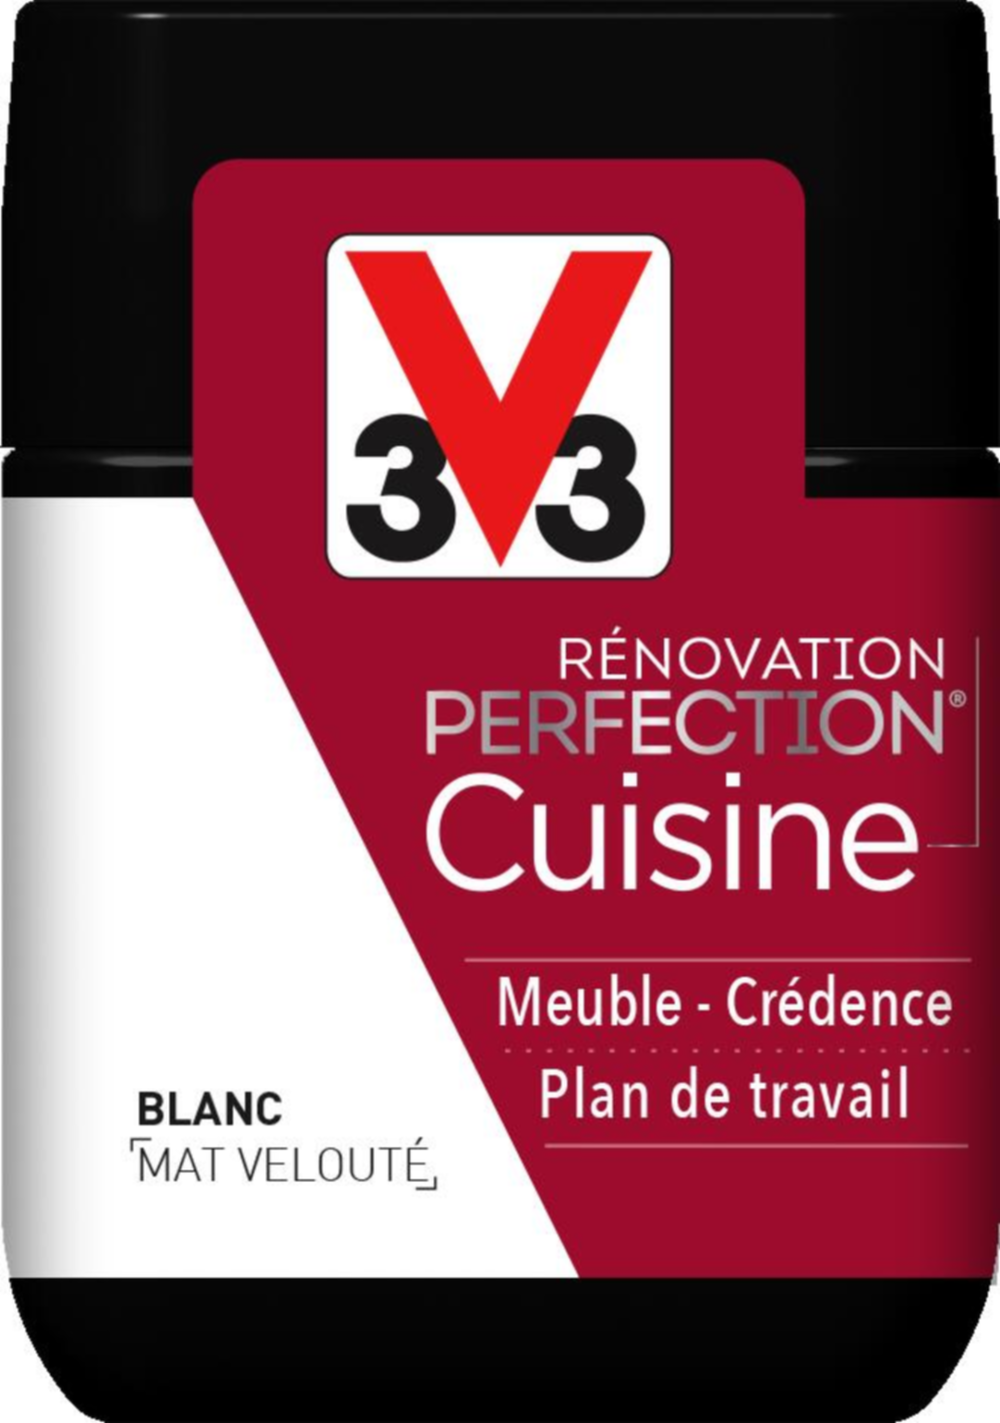 Testeur de peinture rénovation cuisine Perfection blanc mat 75ml - V33